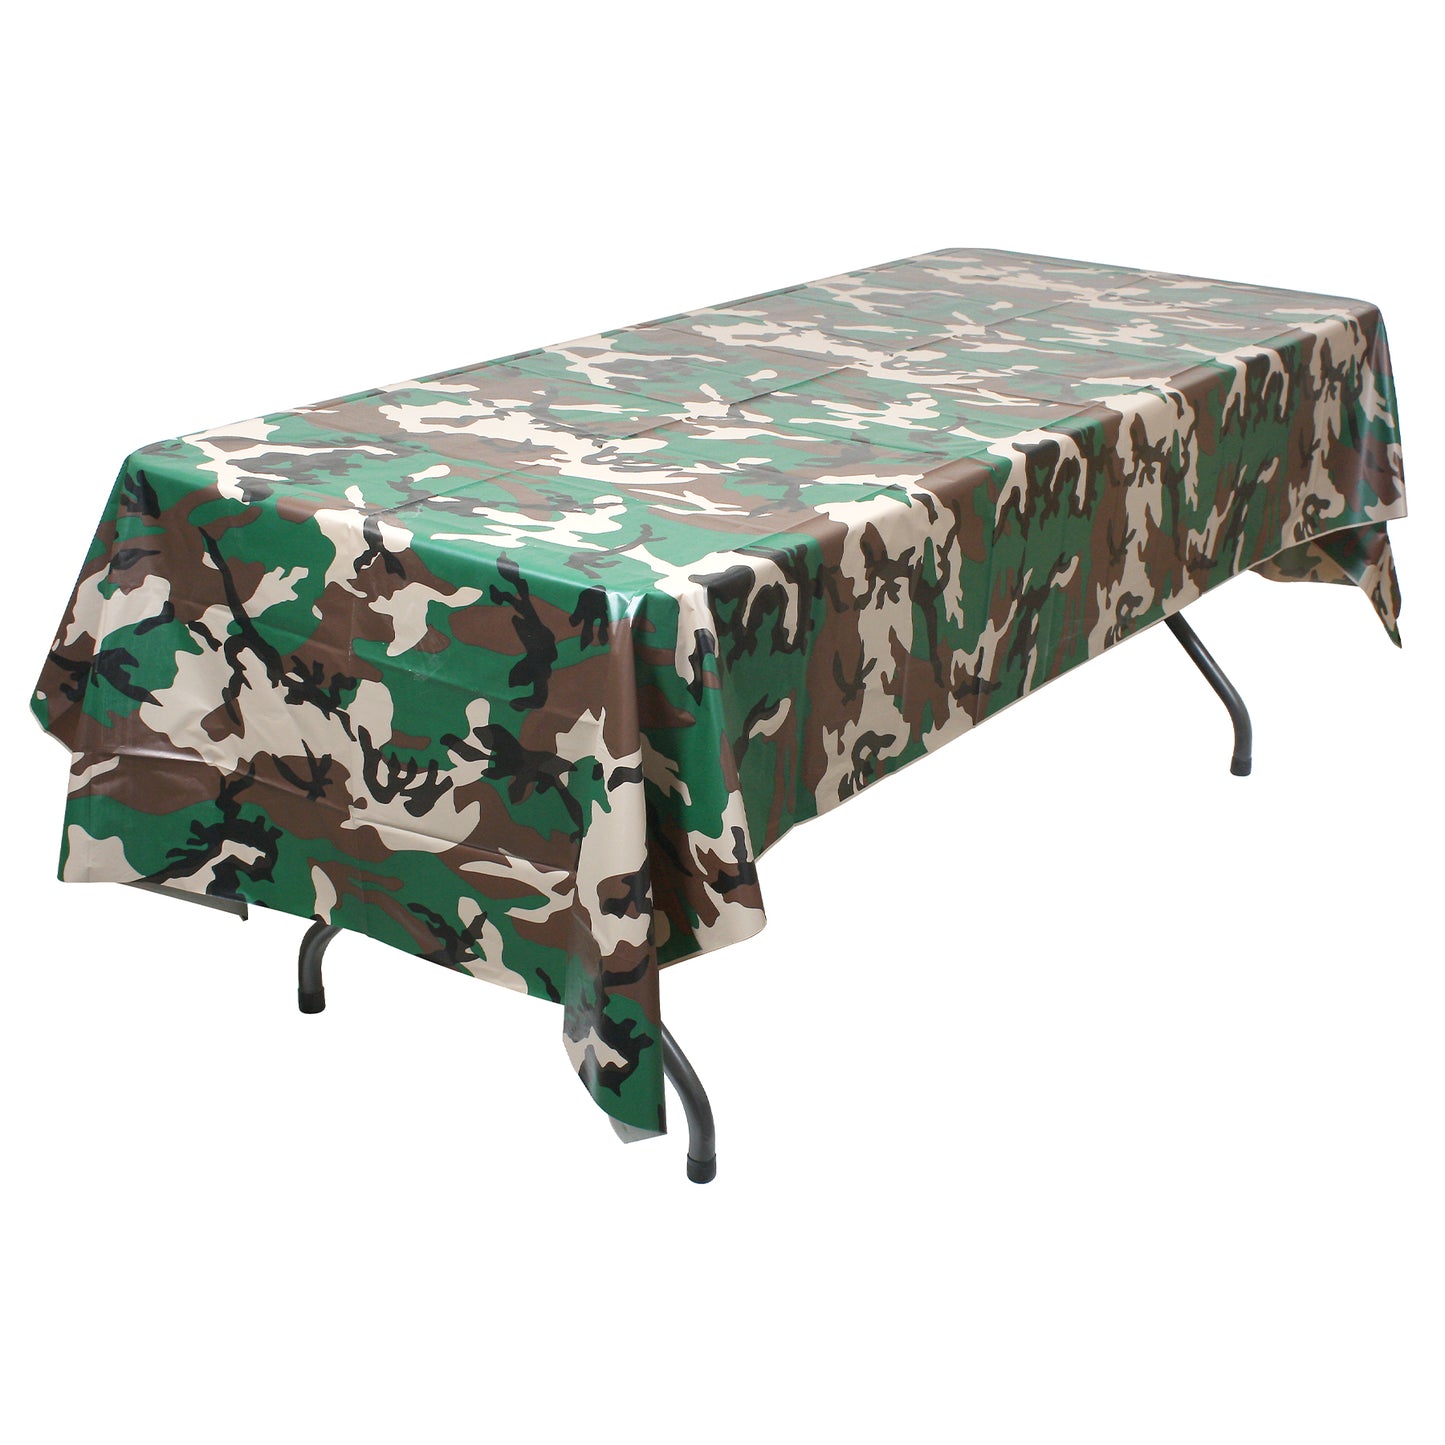 Rothco Woodland Camo Tablecloth